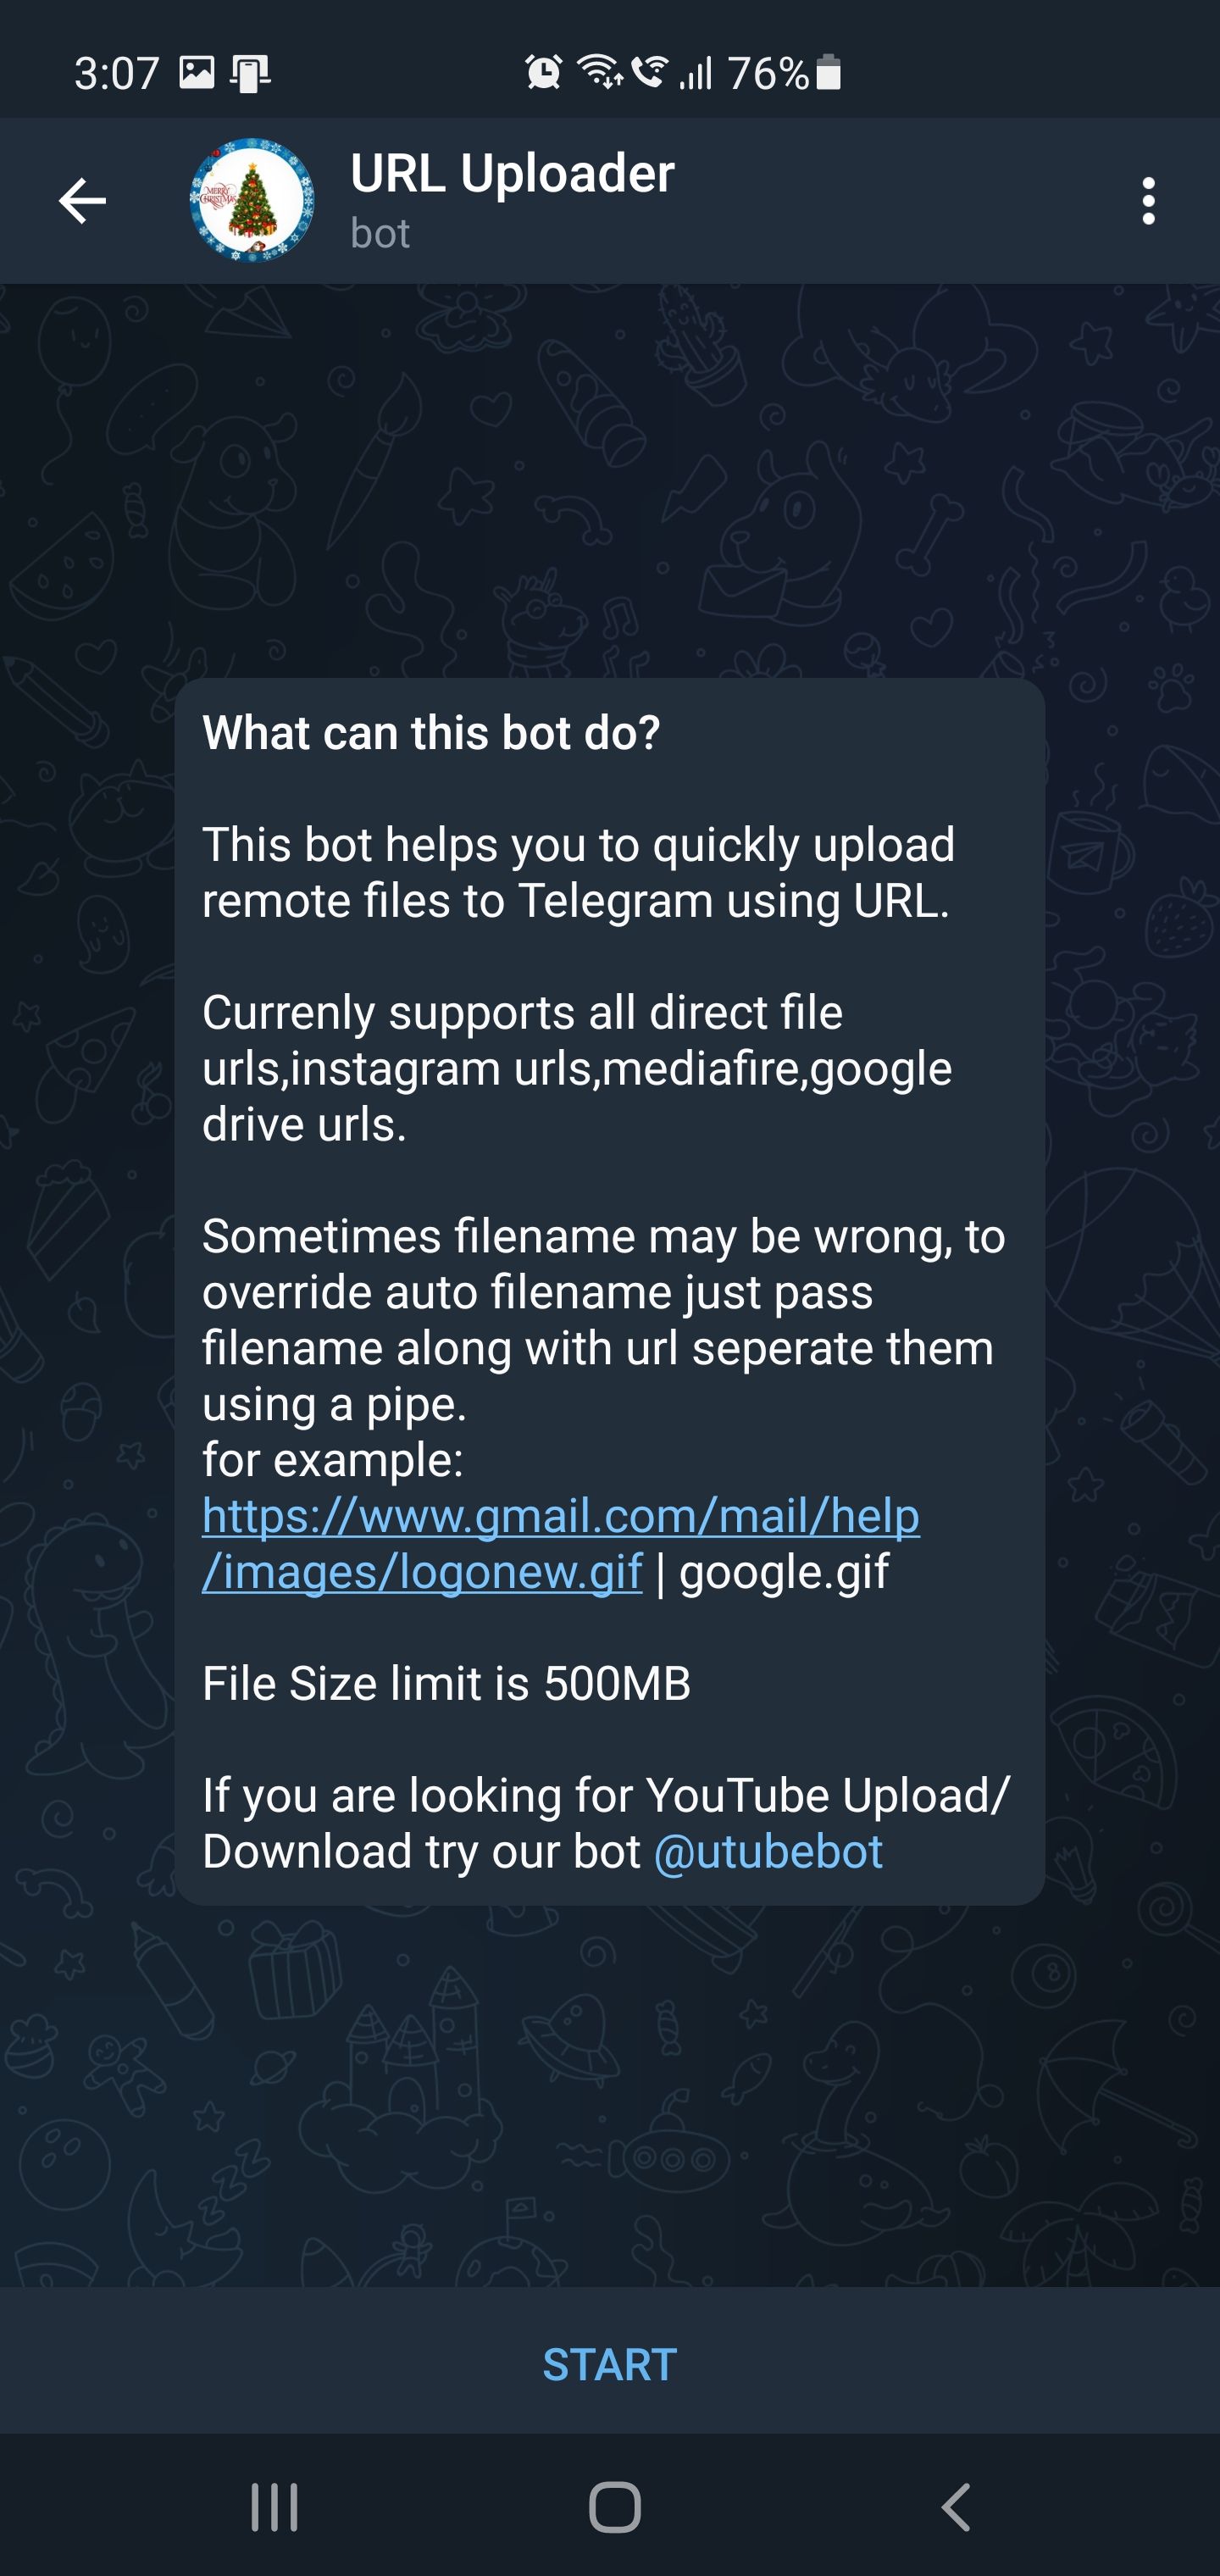 Send Magnet link URL uploader bot telegram